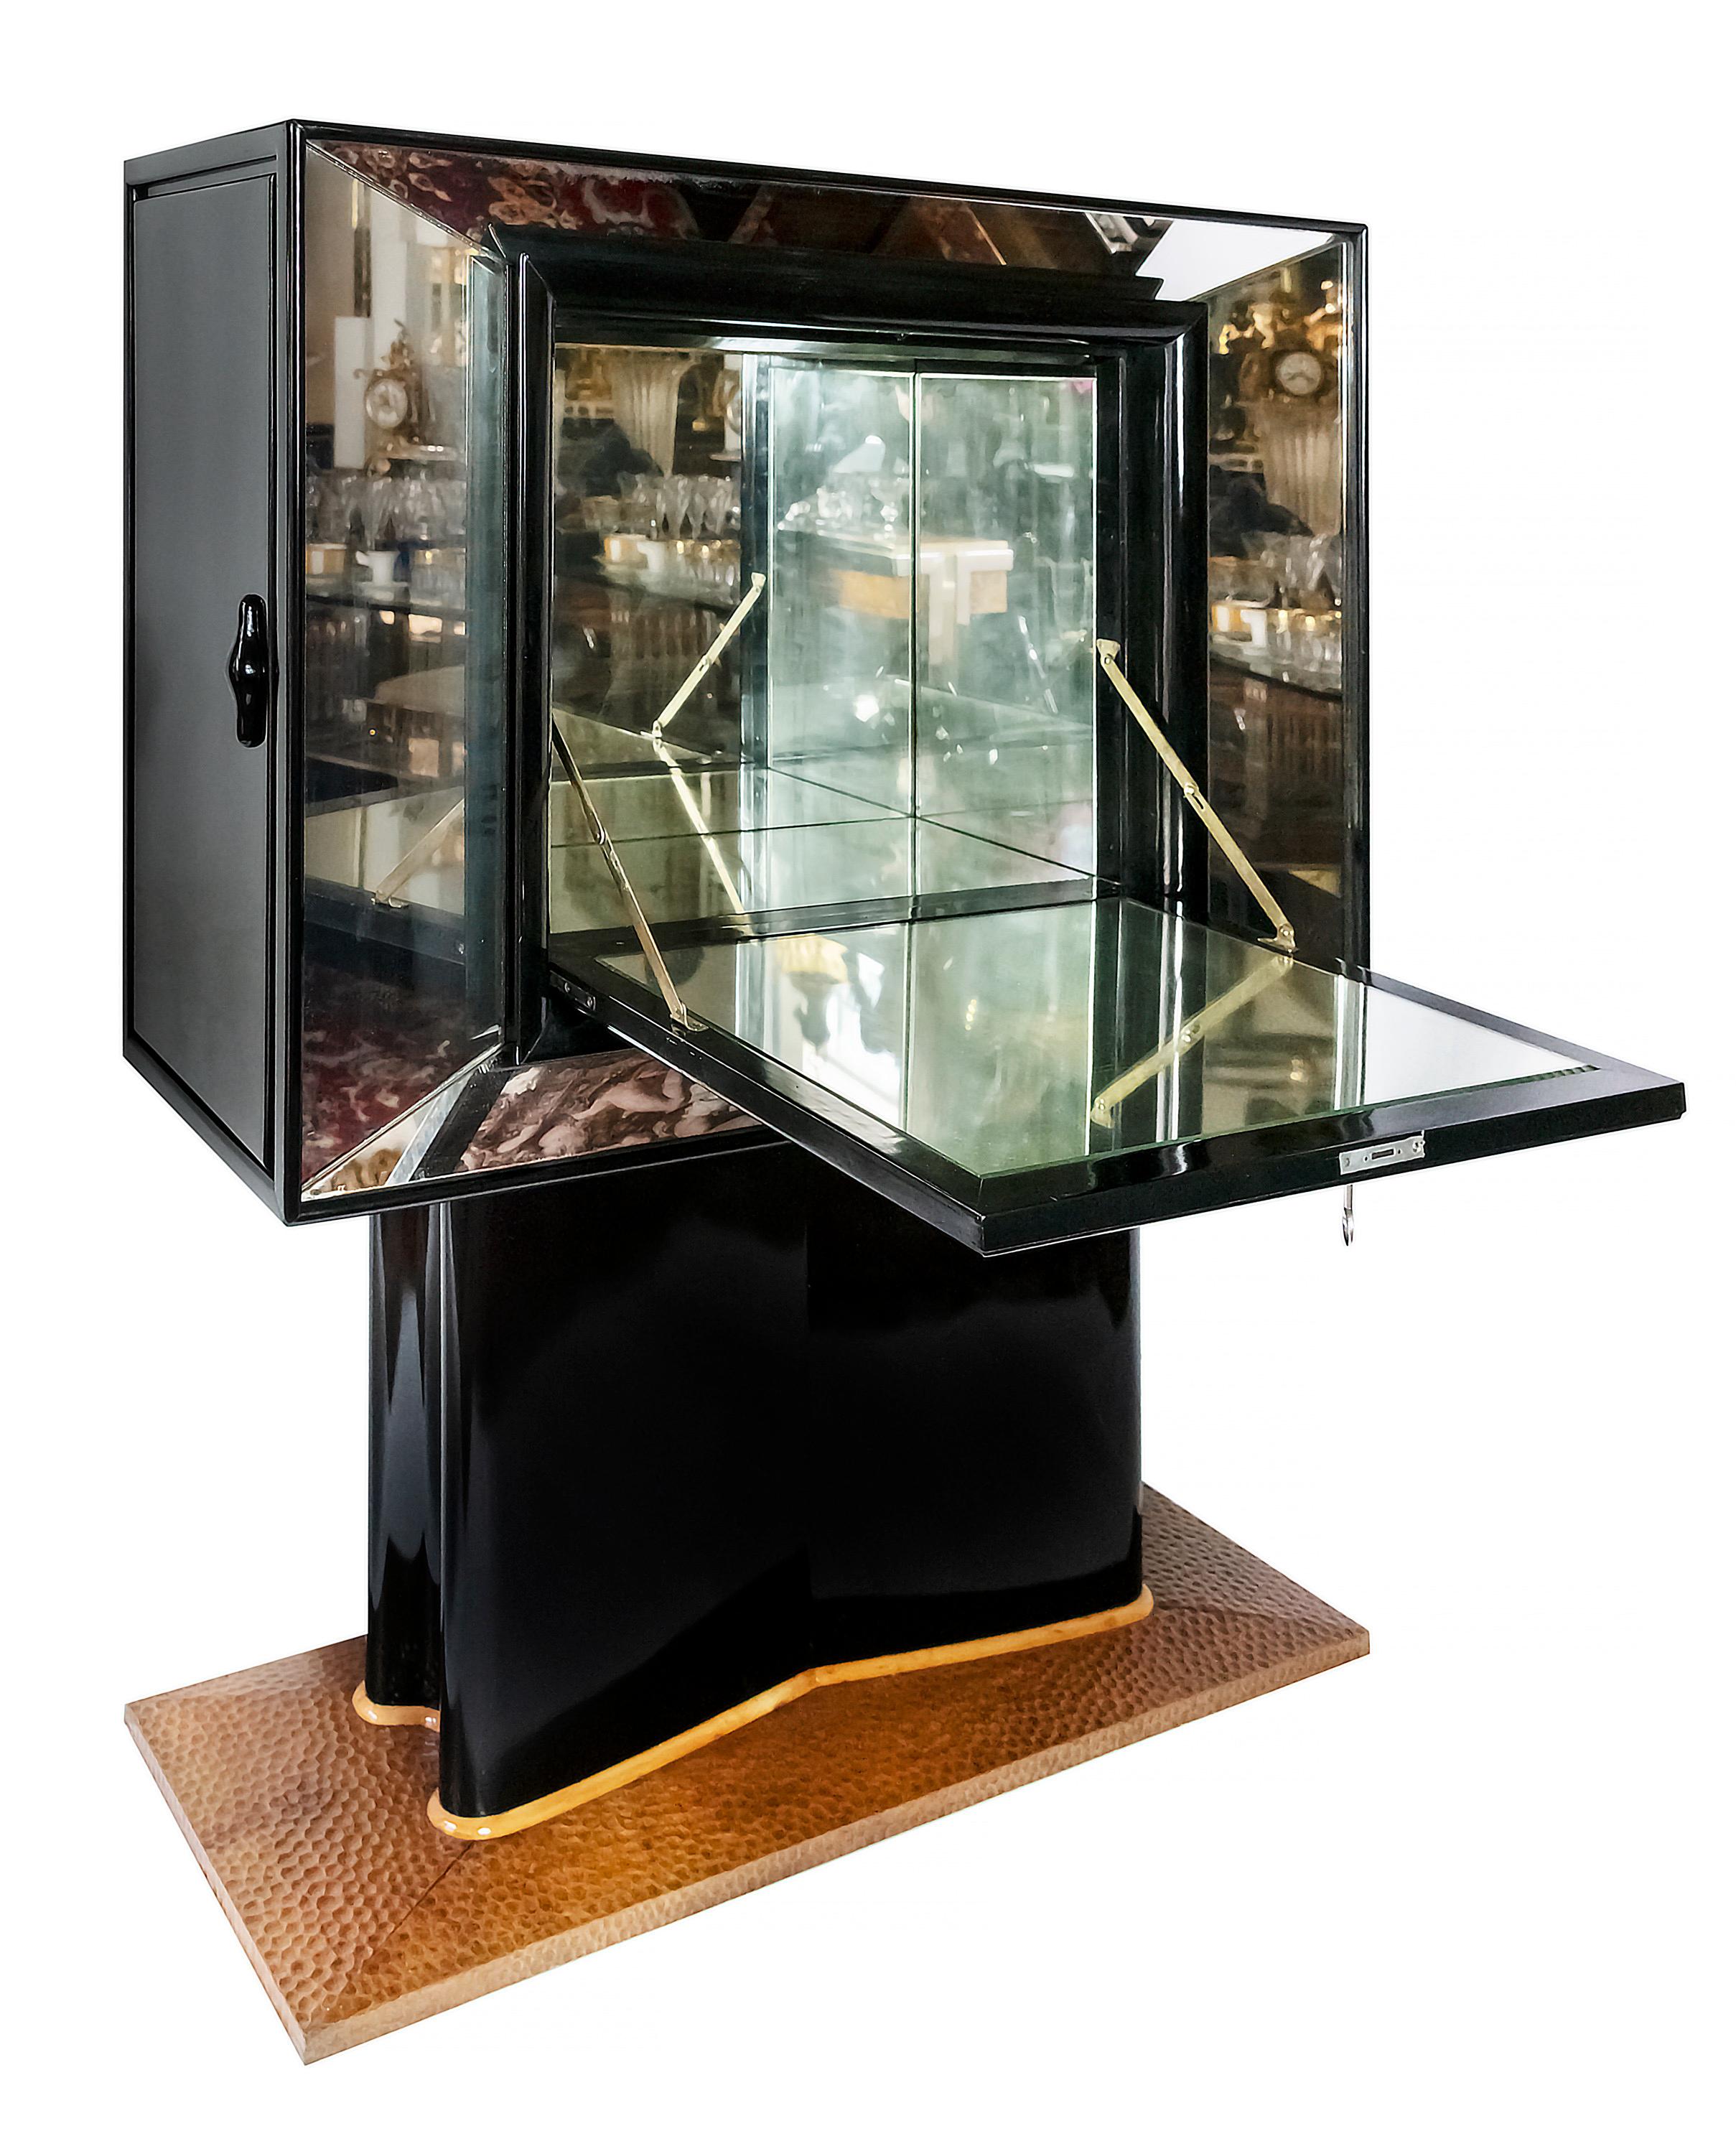 Italian Artdeco Mirrored Bar Cabinet by Valzania